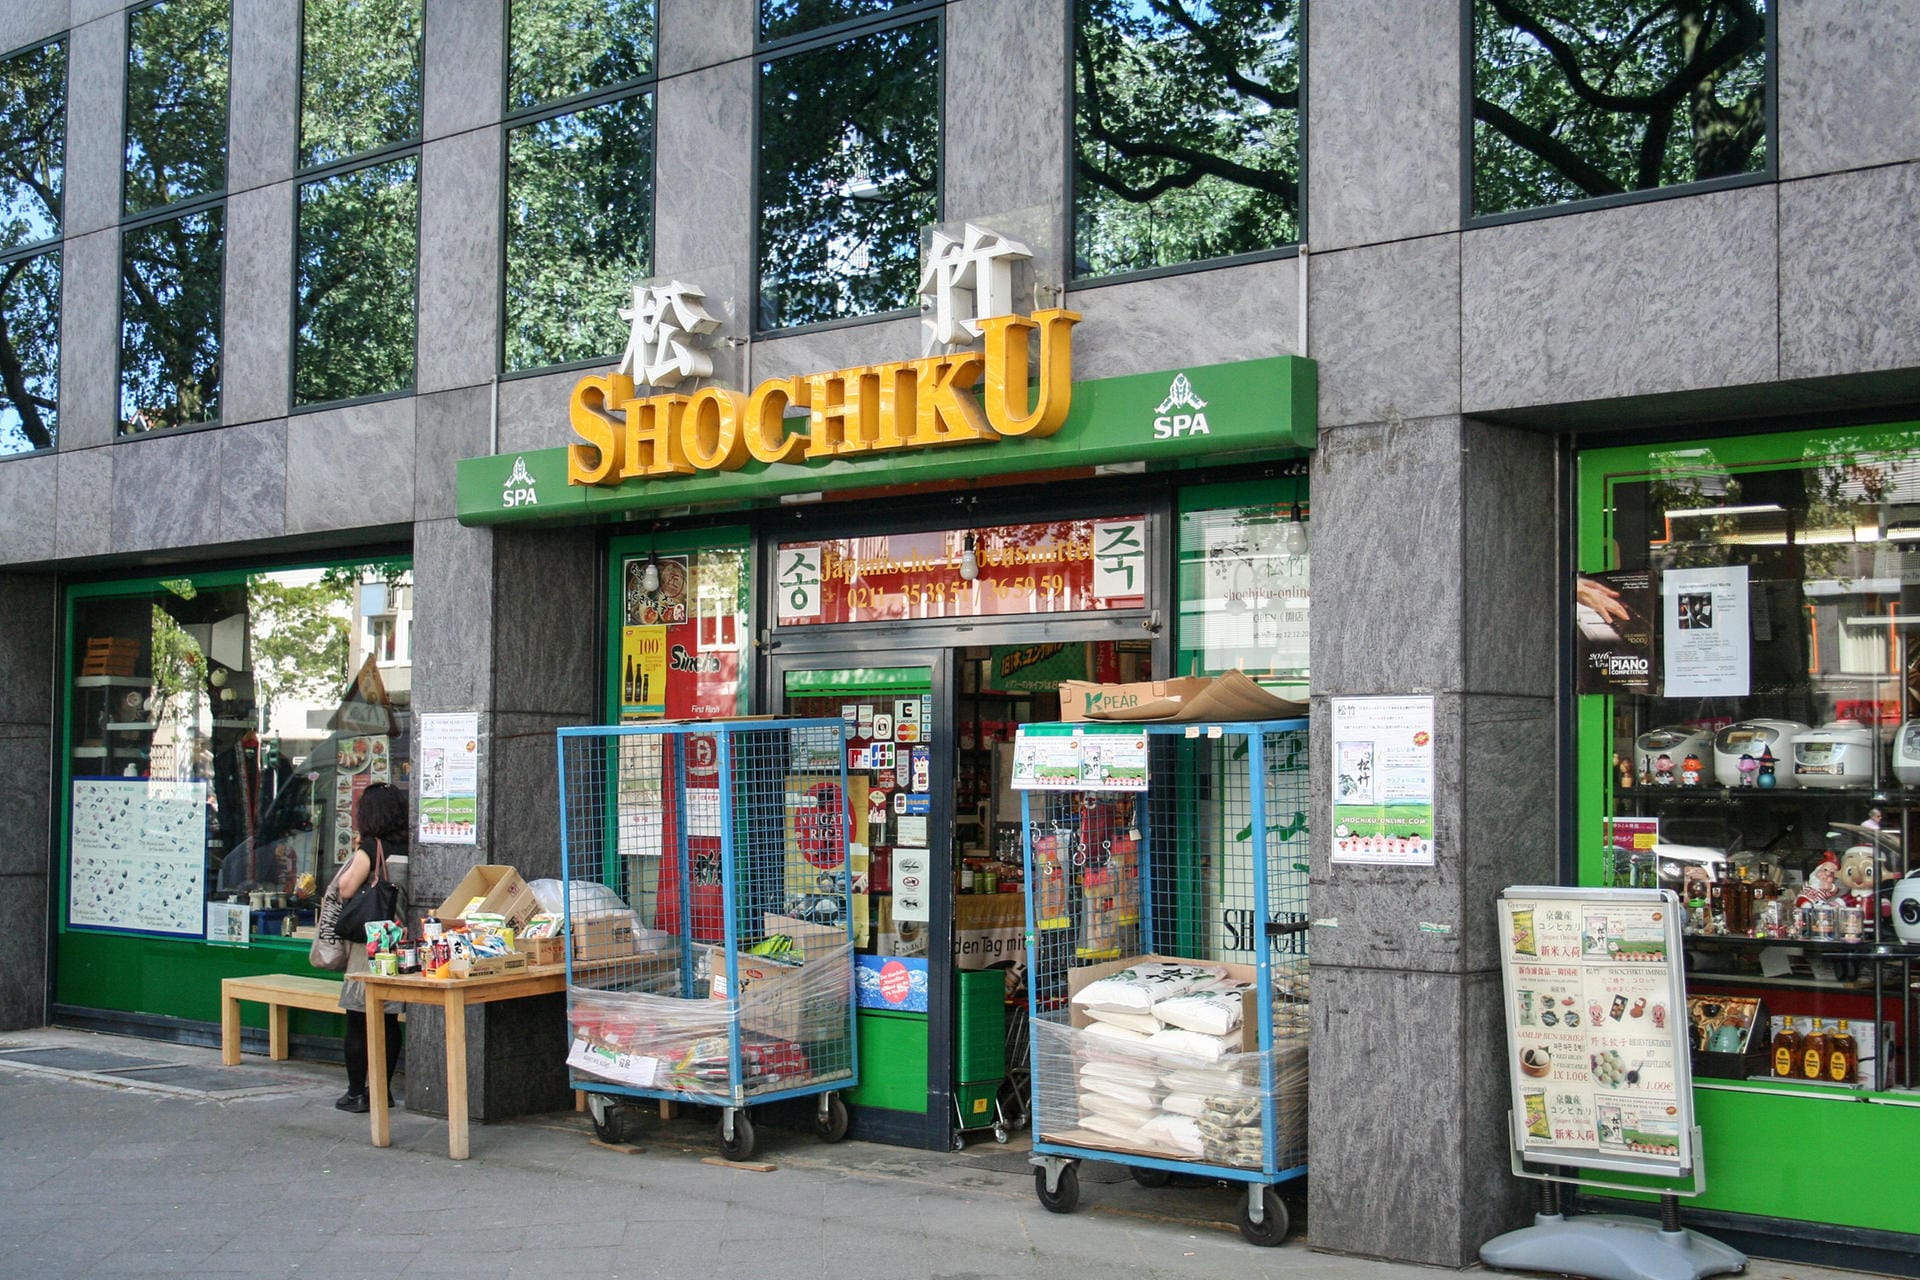 Und sogar einige japanische Supermärkte. Dieser heißt Shochiku.